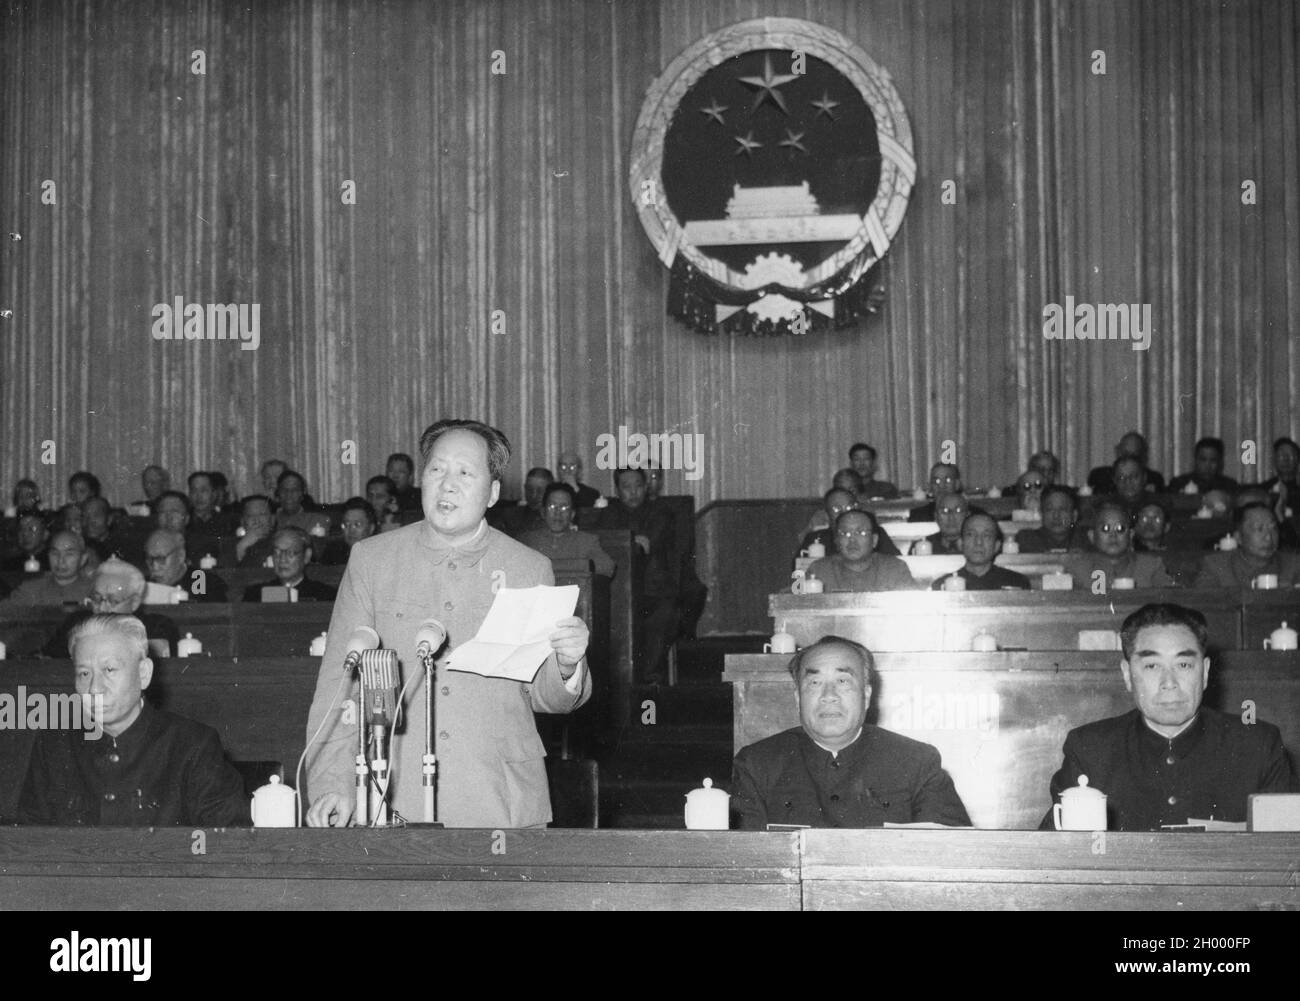 Mao Tse-Tung, Vorsitzender des Zweiten Nationalen Volkskongresses der Volksrepublik China (stehend), wird während der Eröffnung am 18. April 1959 als Vorsitzender einer Sitzung dargestellt. Peking, China. Stockfoto